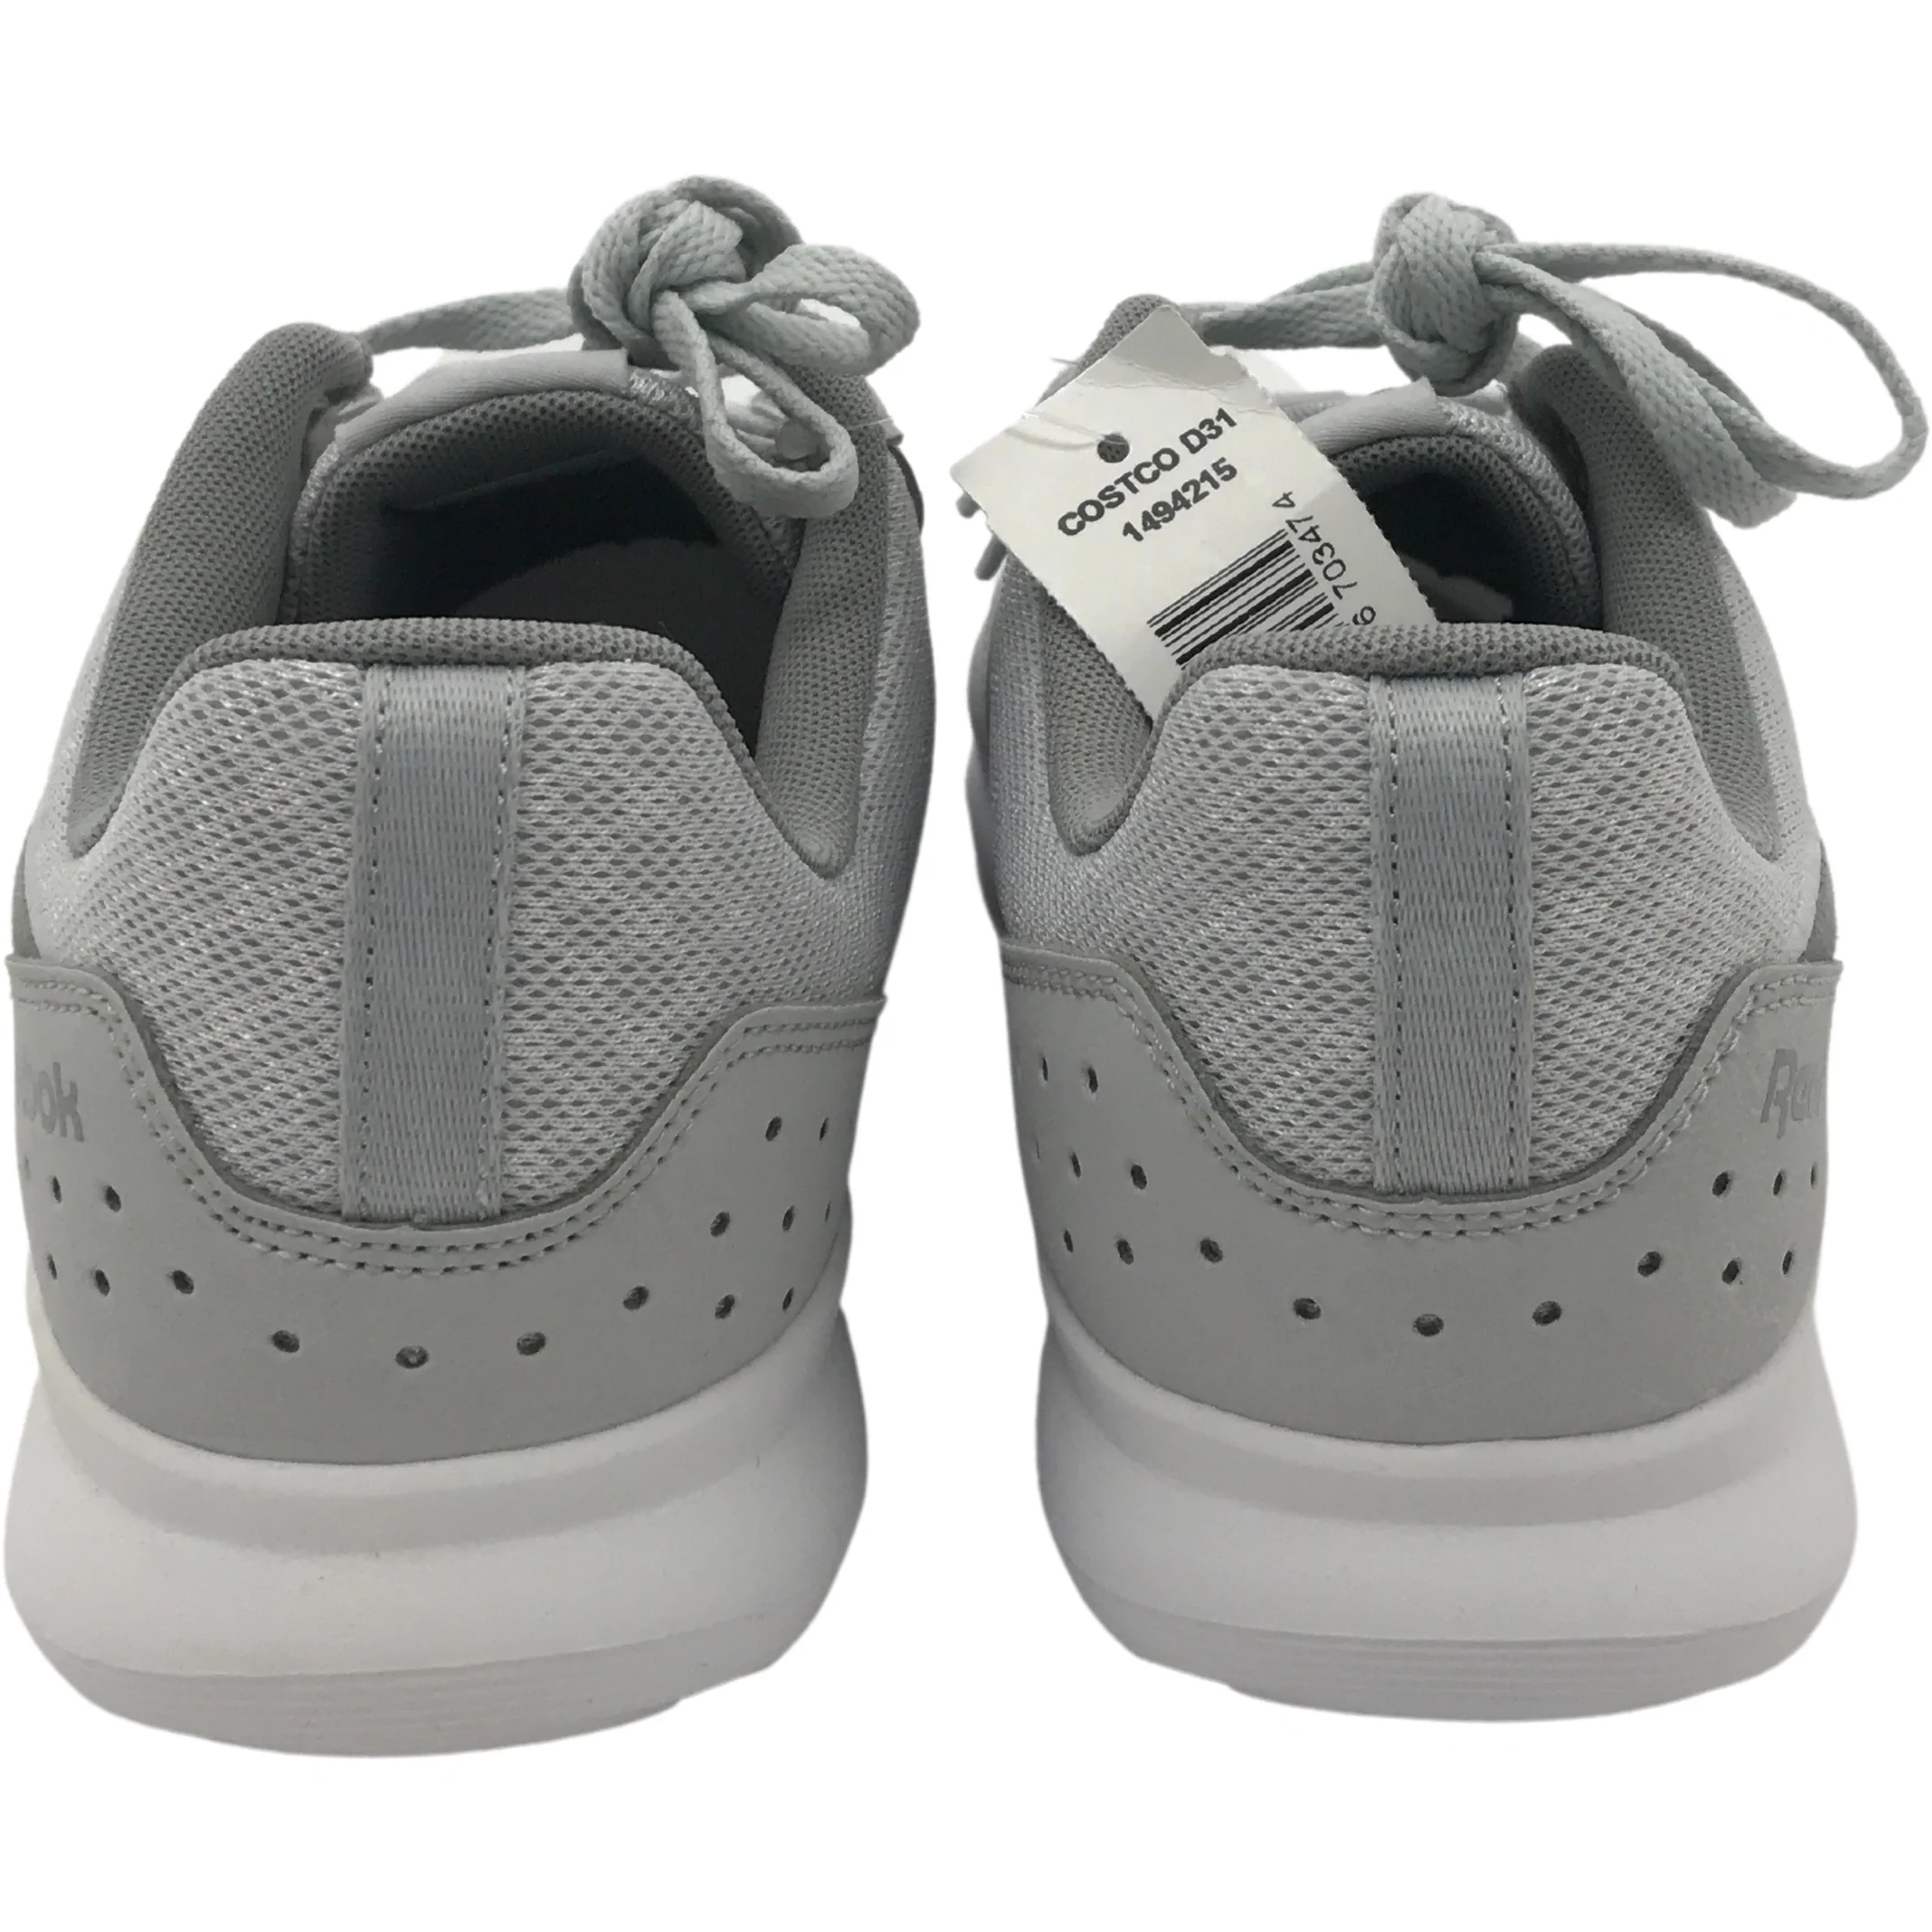 Reebok Women's Running Shoe: Dart TR 2.0 / Training Shoe / Grey / Size 9.5